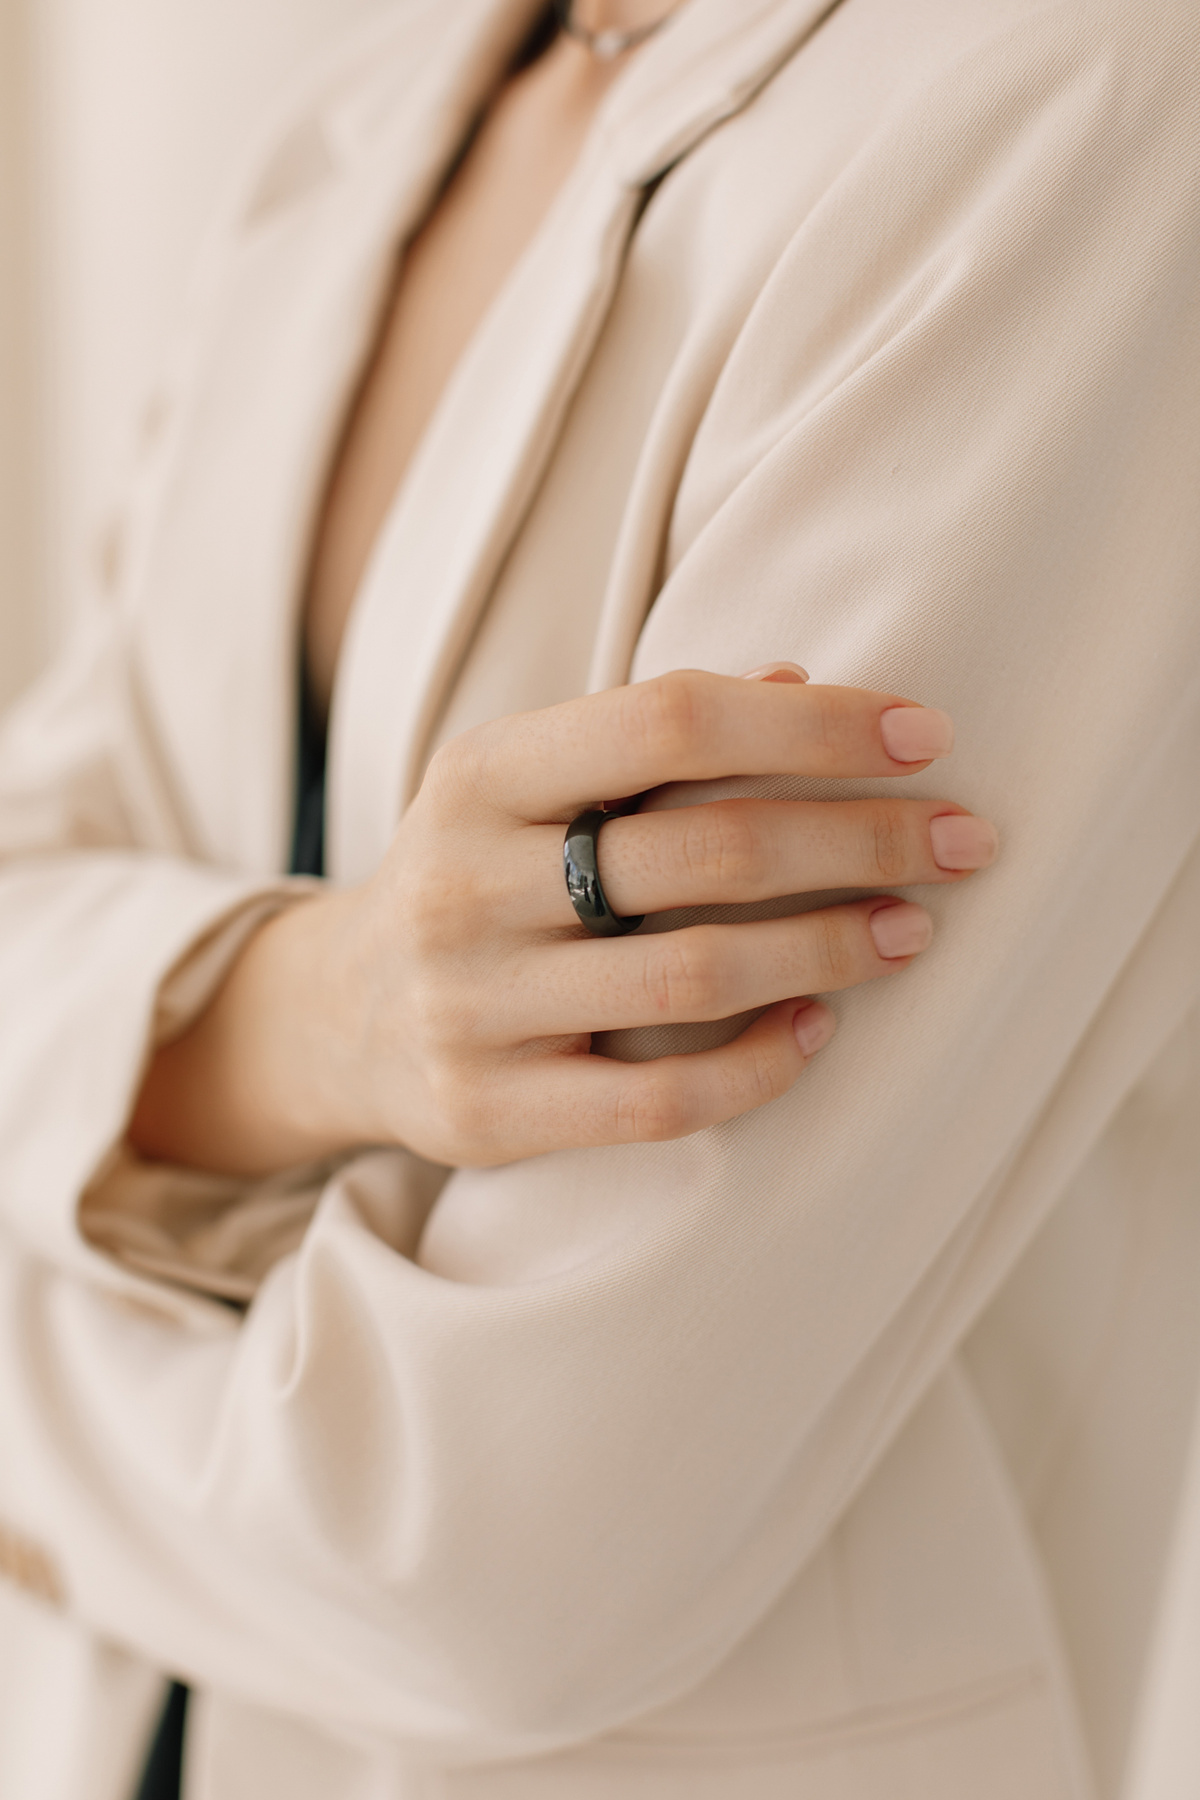 Кольцо для женщин. Керамическое кольцо может стать прекрасным подарком или знаком внимания на любой повод.